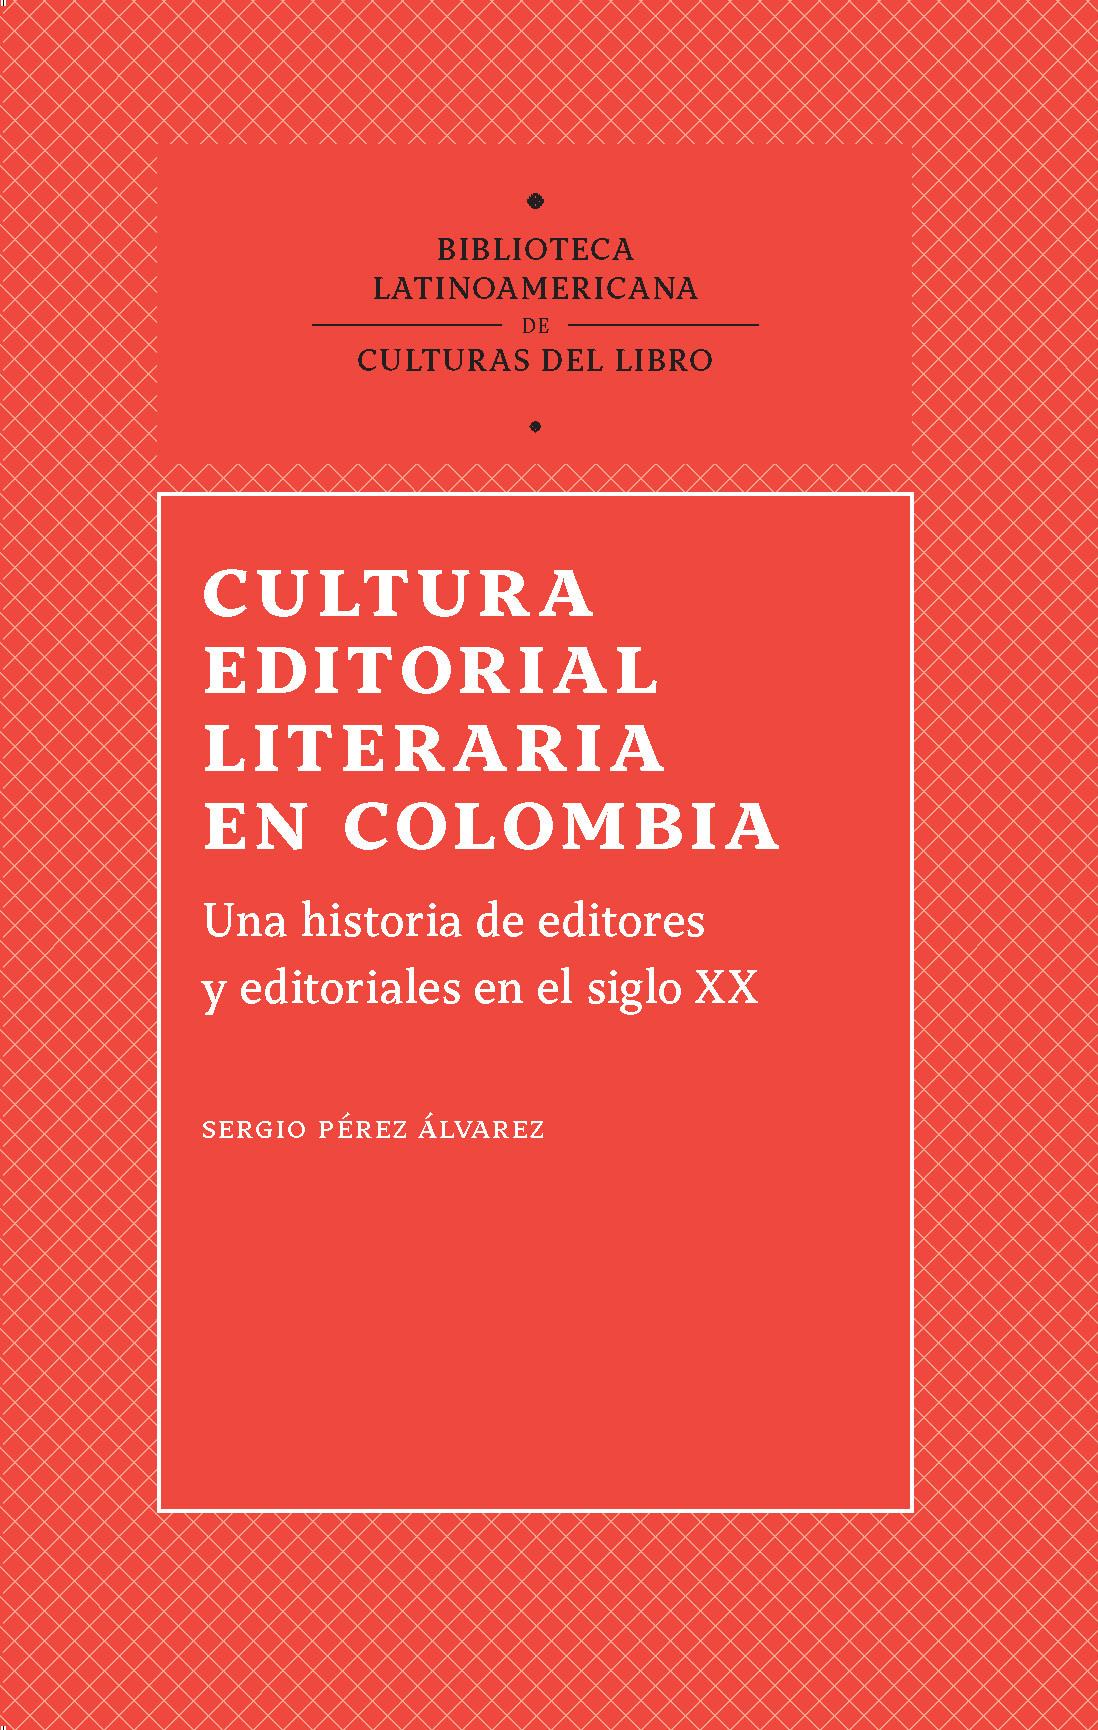 Imagen de portada del libro Cultura editorial literaria en Colombia